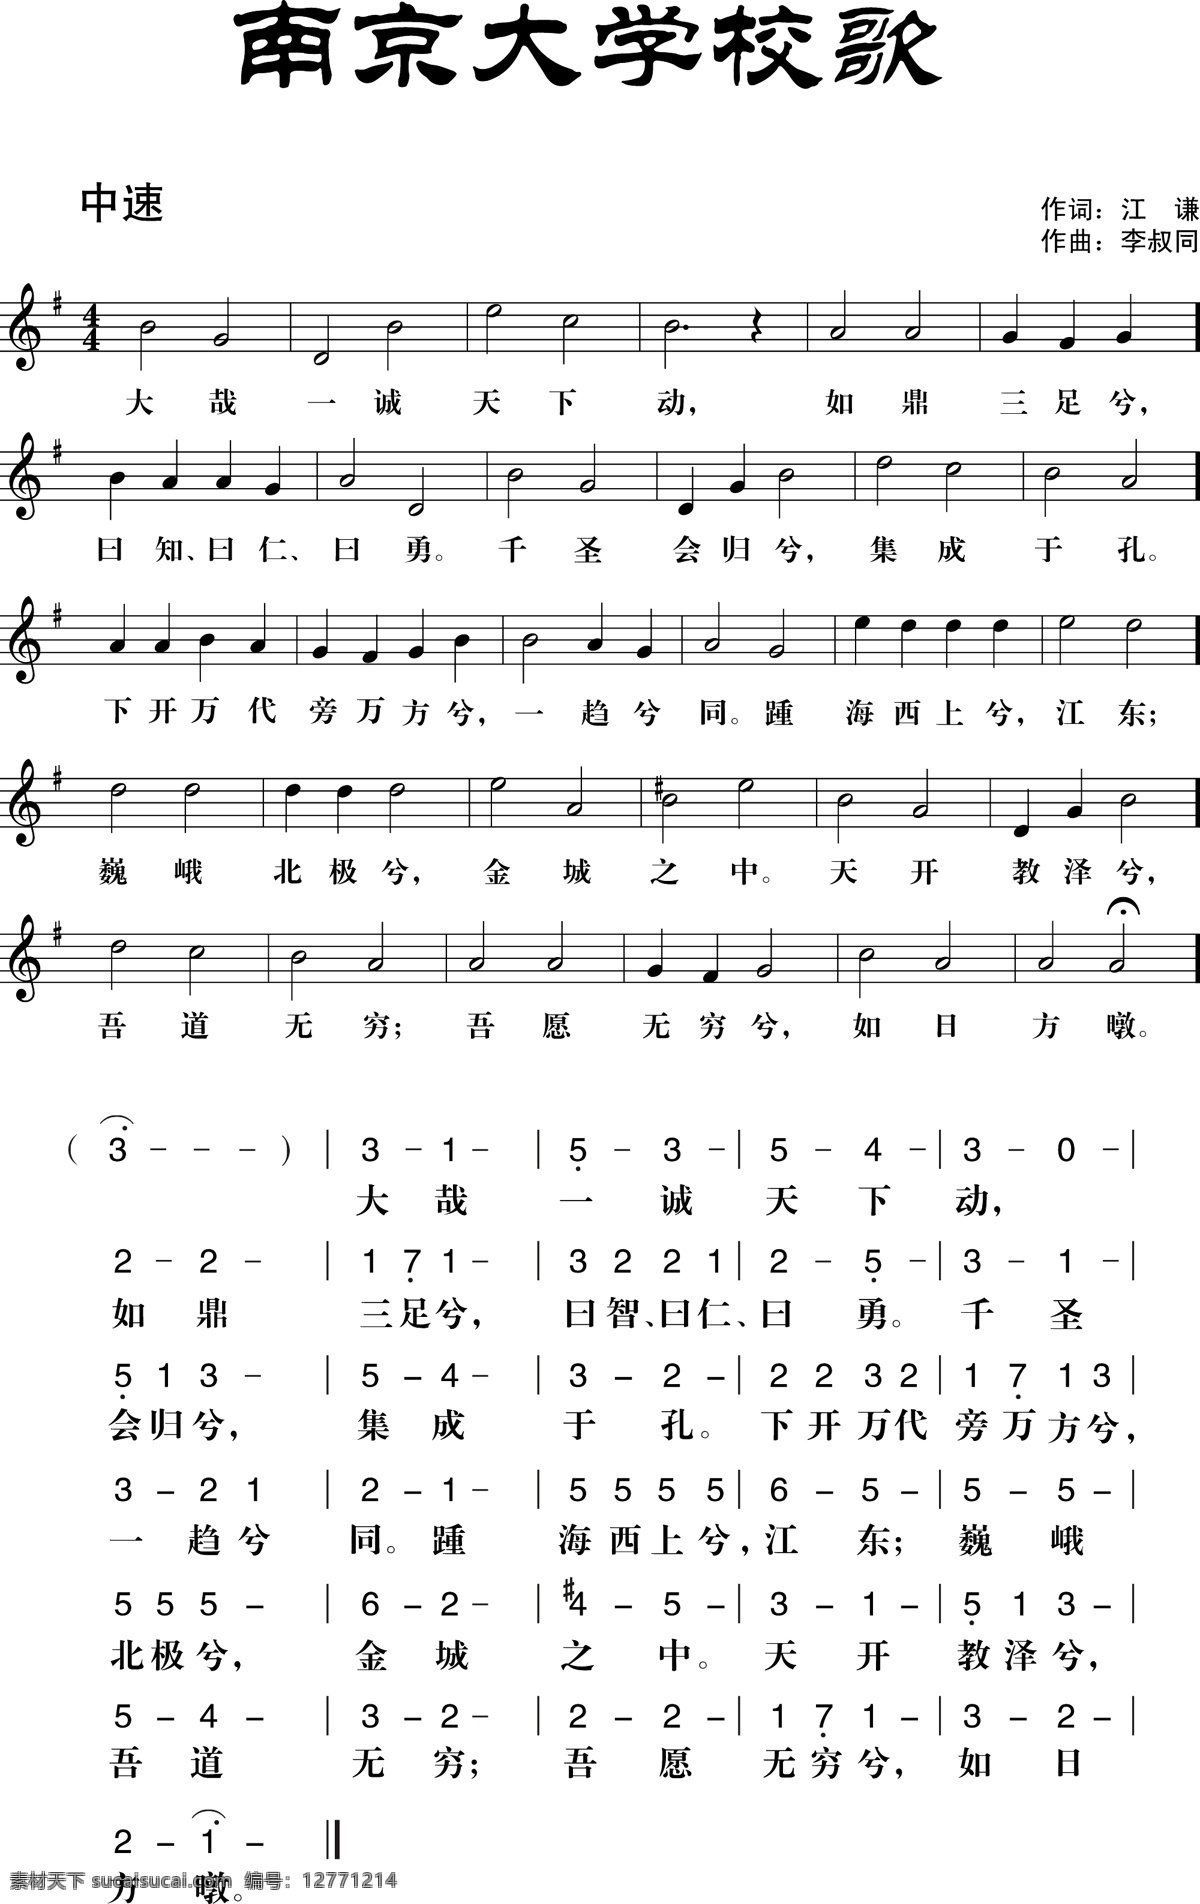 南京大学校歌 南大 南京大学 校歌 歌谱 音符 音谱 音乐